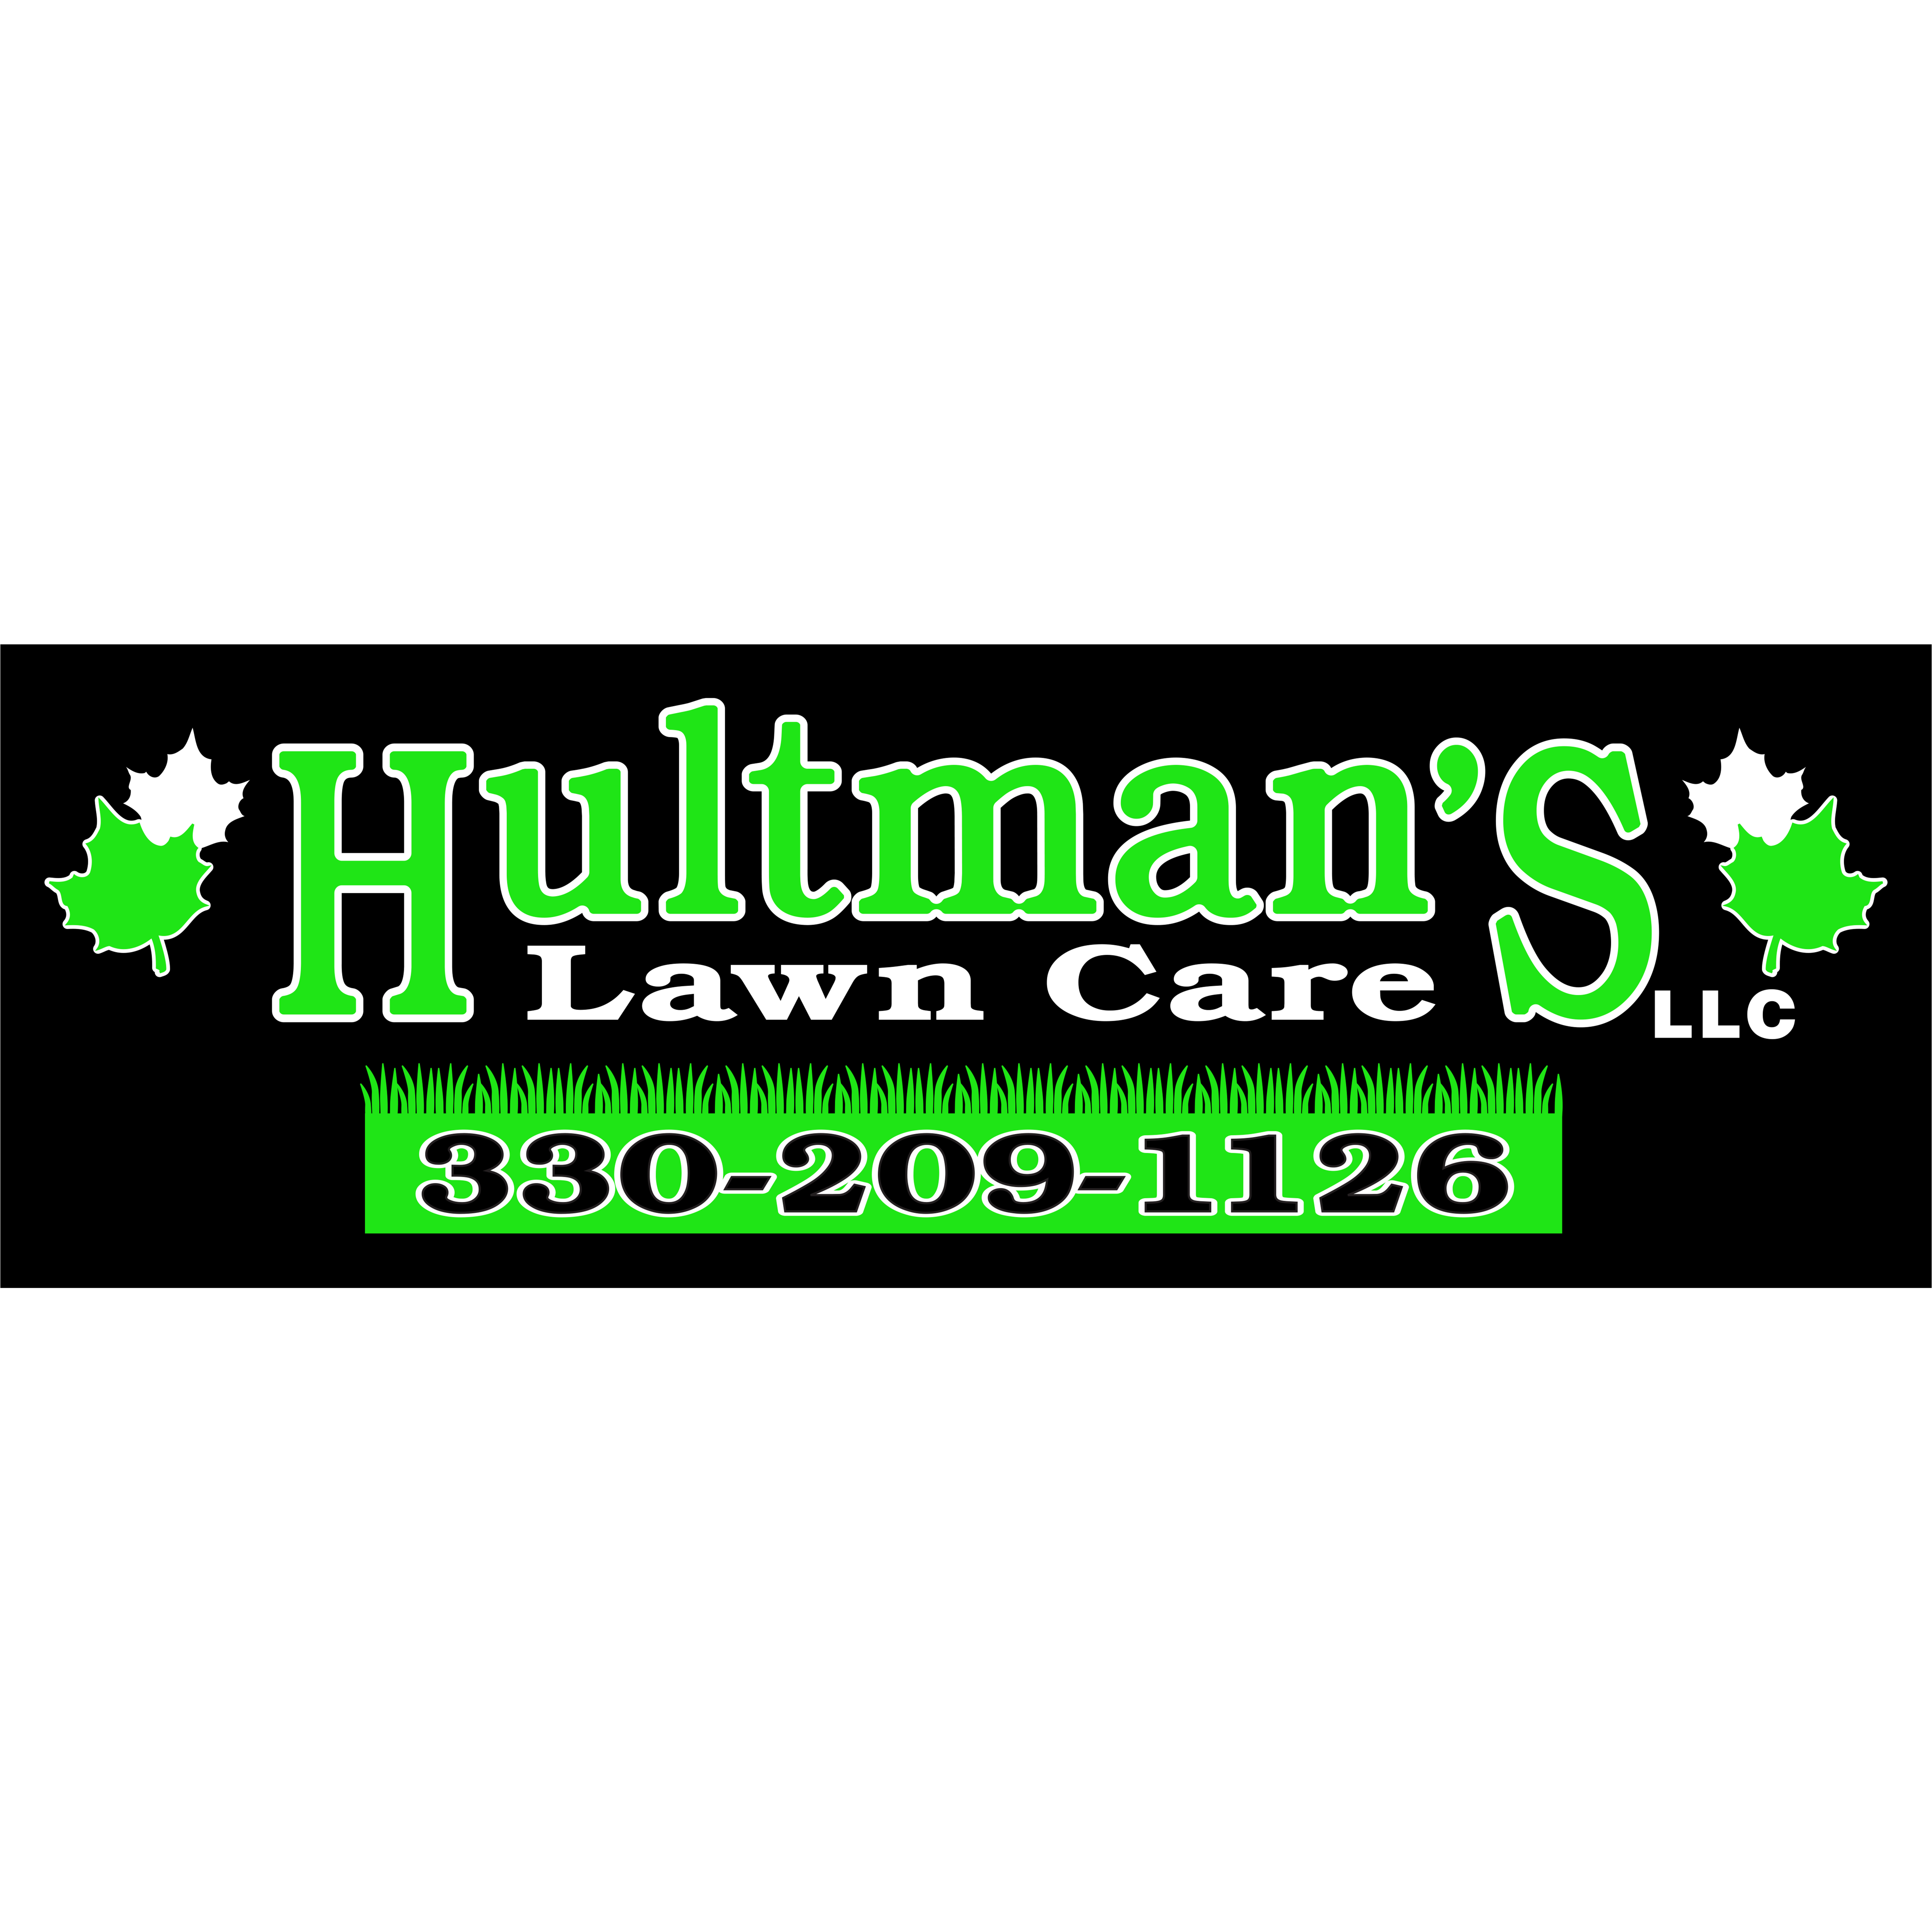 Hultman's Lawn Care, LLC